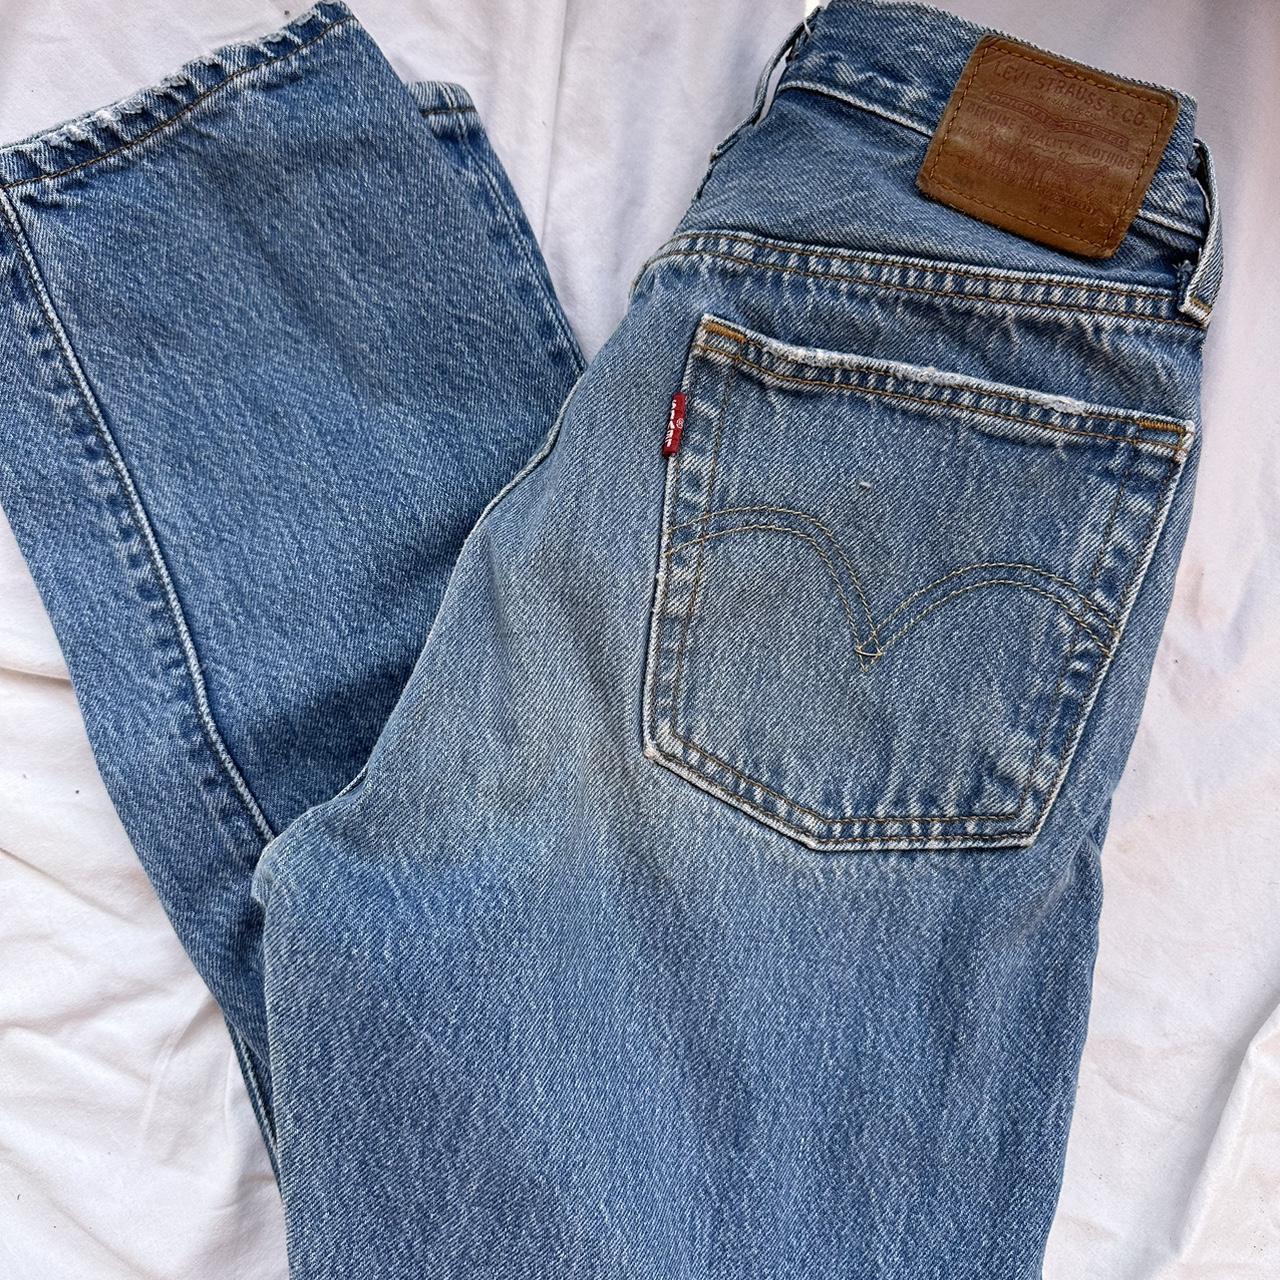 Levi’s 501 jeans 👖 size w25 x l28 perfect medium wash - Depop